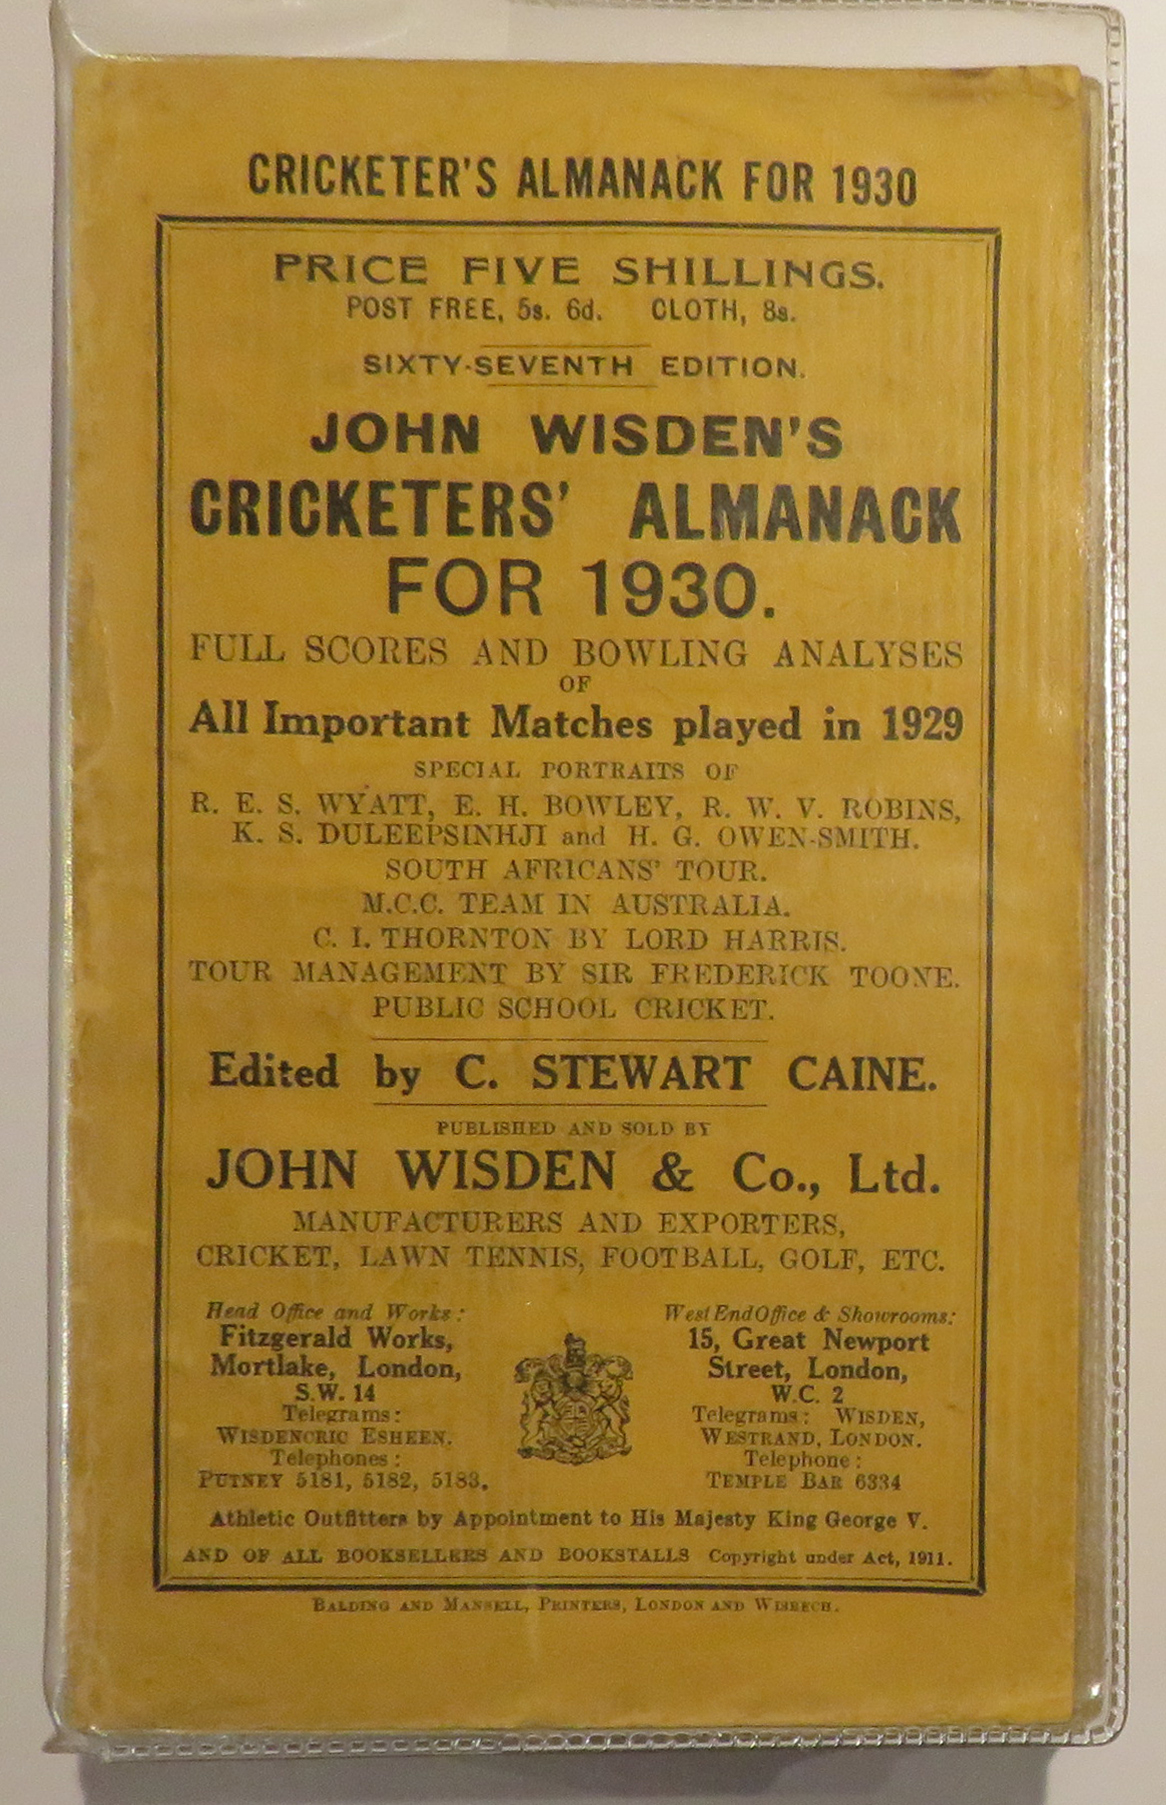 John Wisden's Cricketers' Almanack For 1930